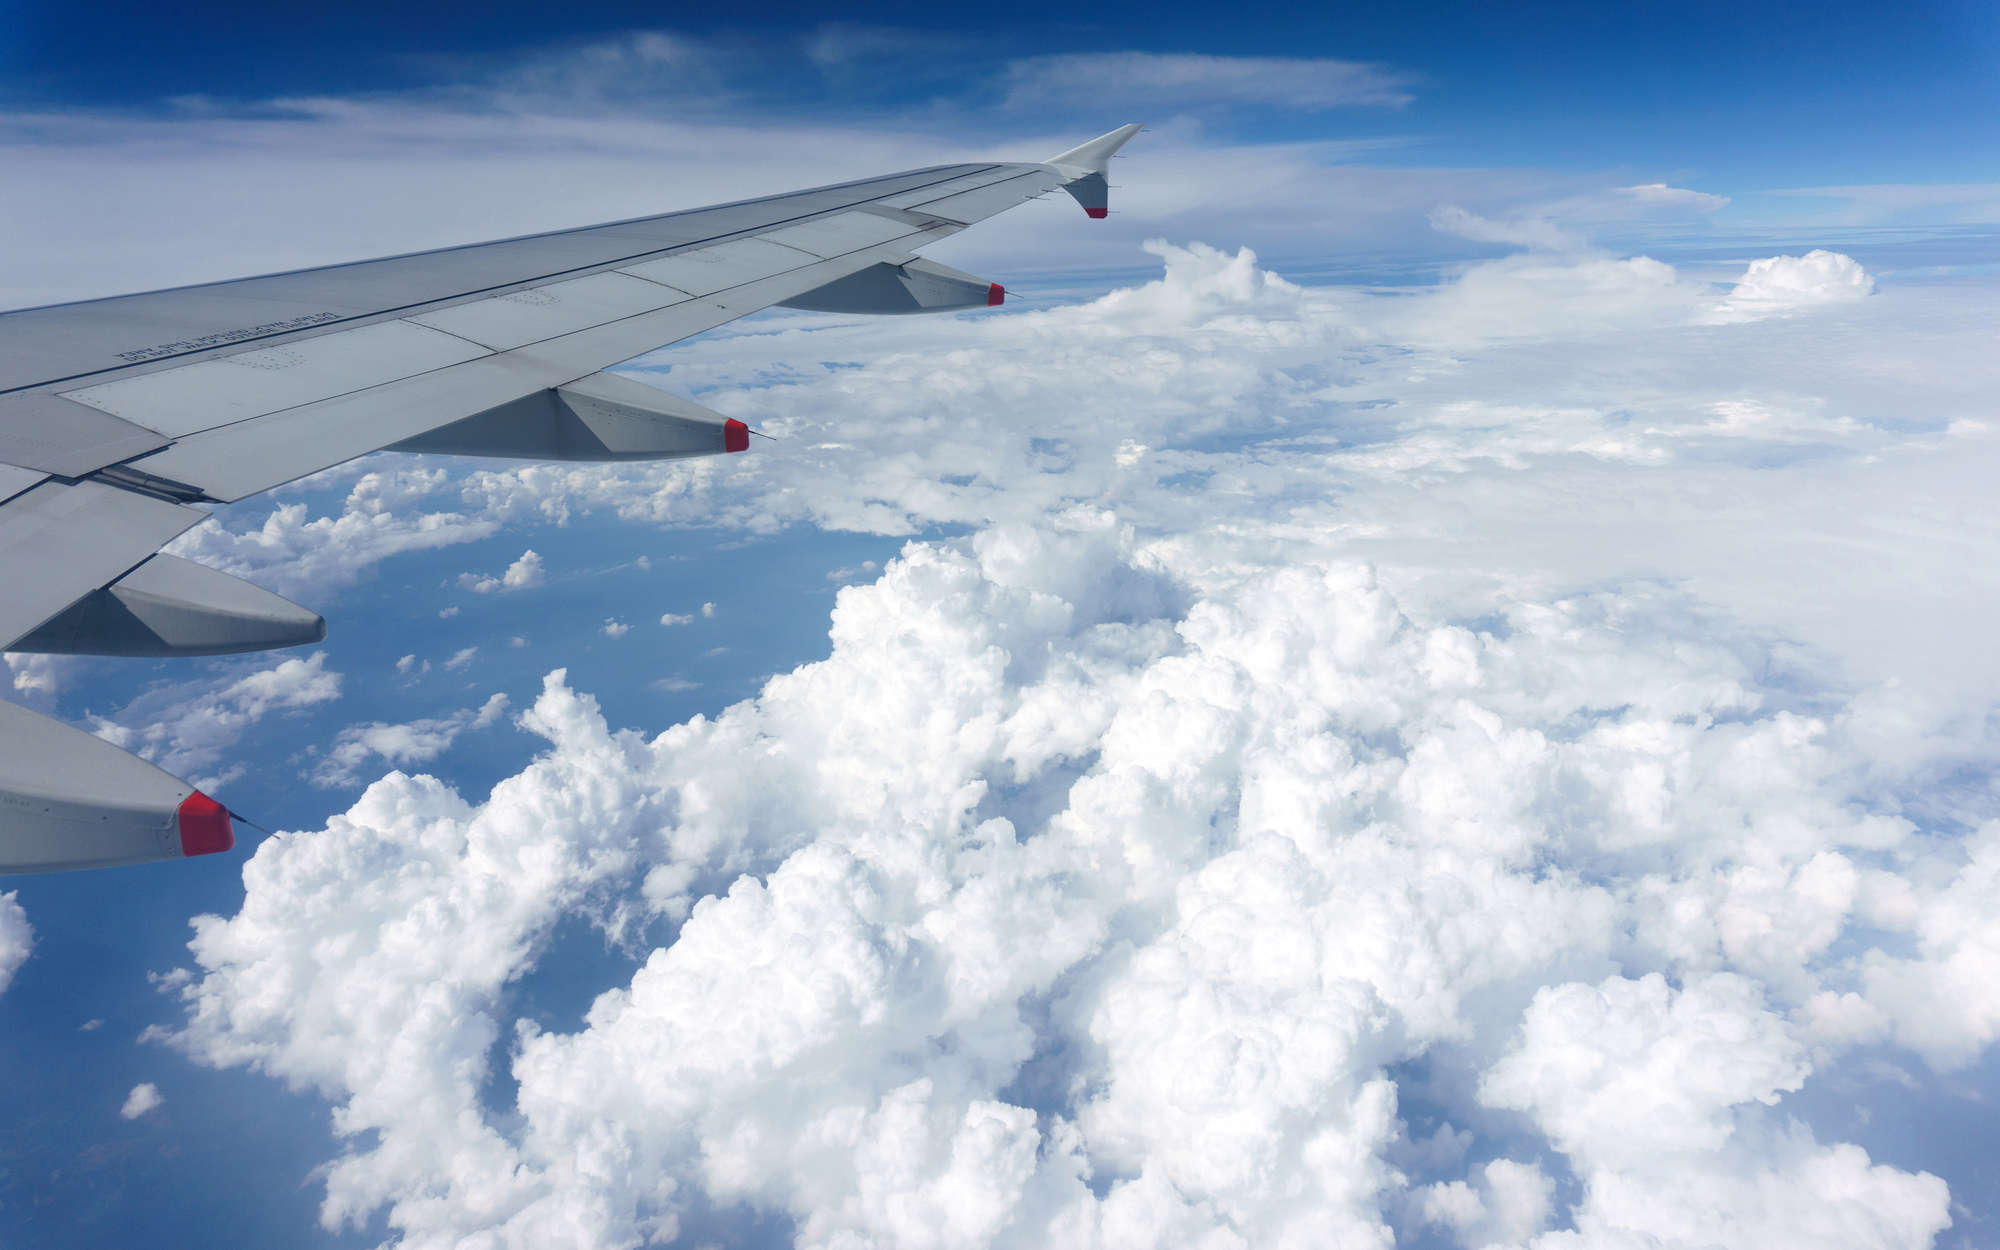             Fototapete Flugzeug über den Wolken – Perlmutt Glattvlies
        